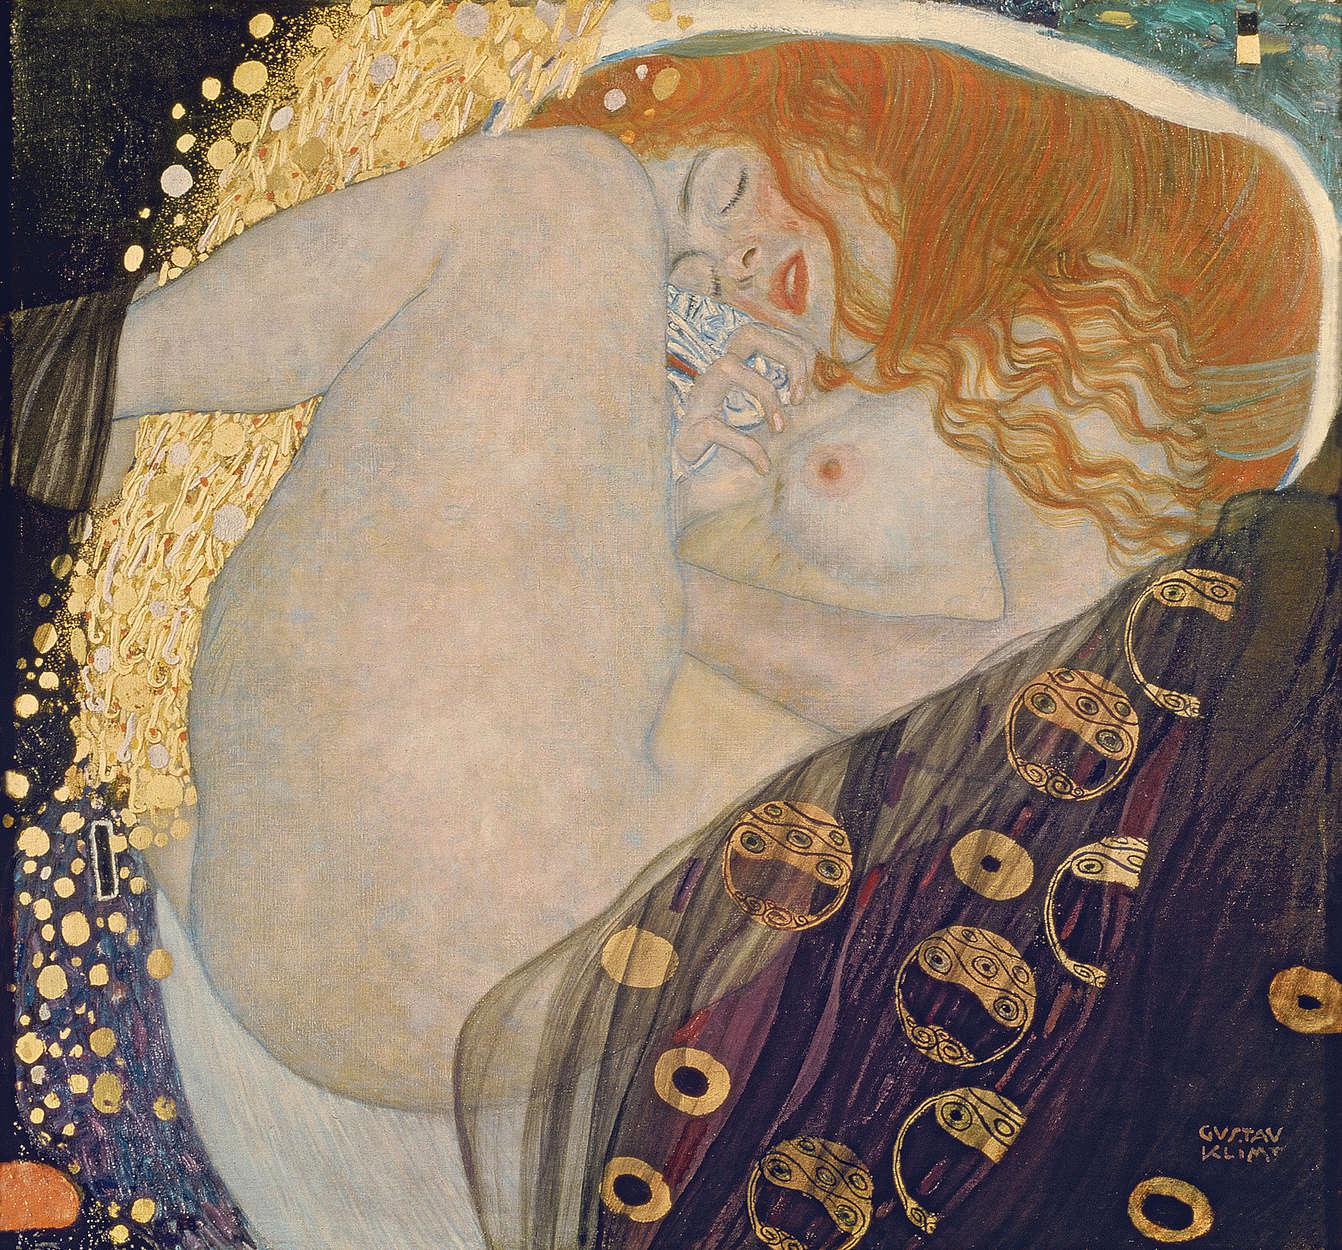             Papier peint panoramique "Danaé" de Gustav Klimt
        